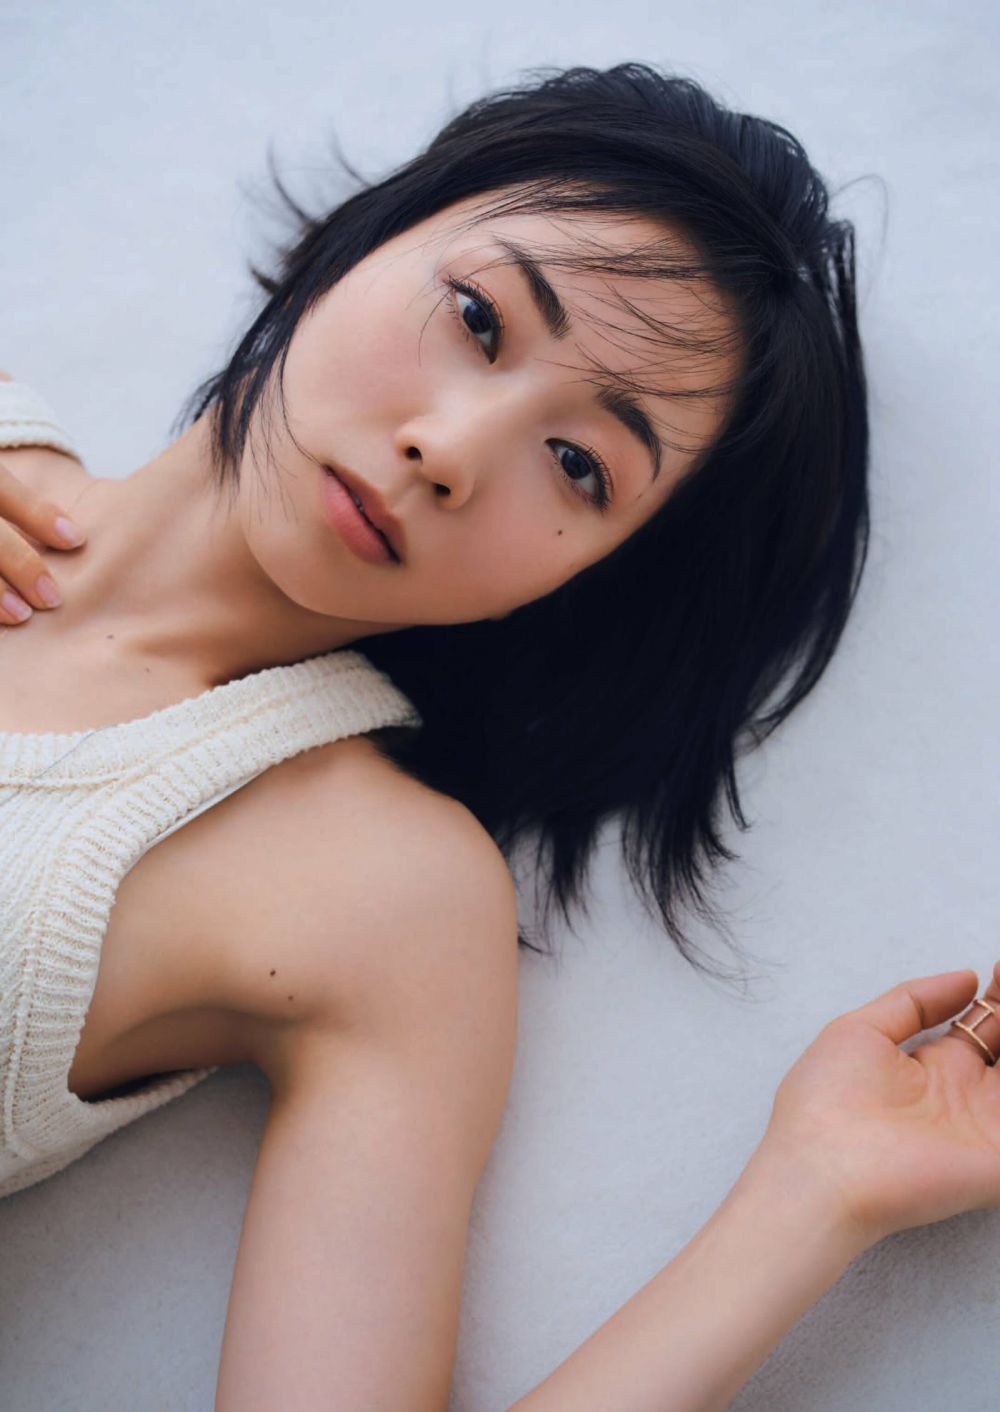 Haruka Kinami Sexy and Hottest Photos , Latest Pics